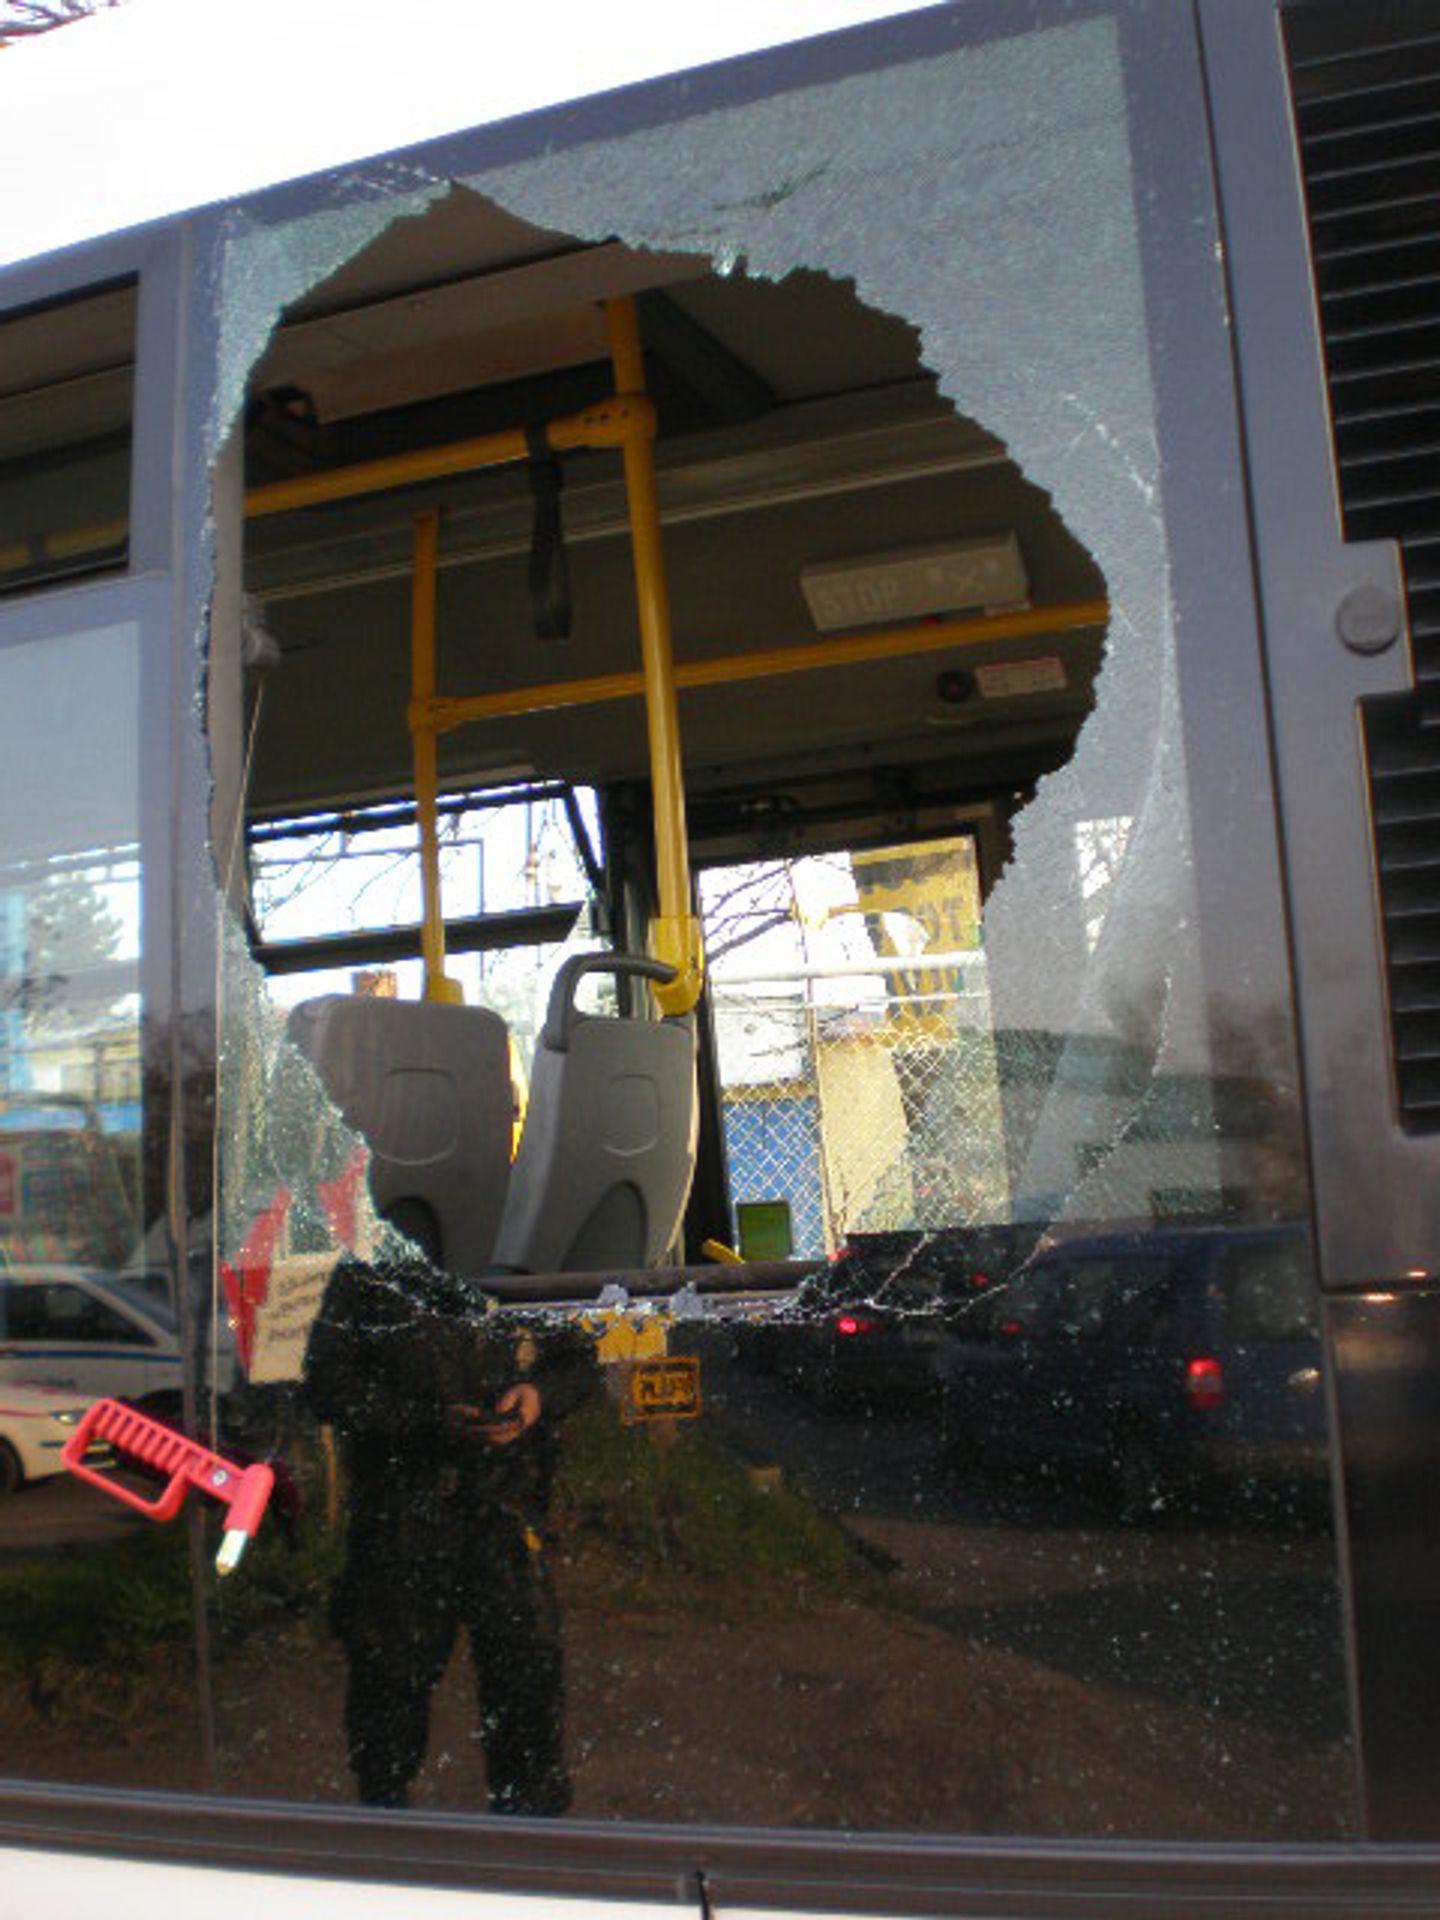 Muž vykopl v koloně okno autobusu a vyskočil - 5 - GALERIE: Muž vykopl v koloně okno autobusu a vyskočil (4/5)